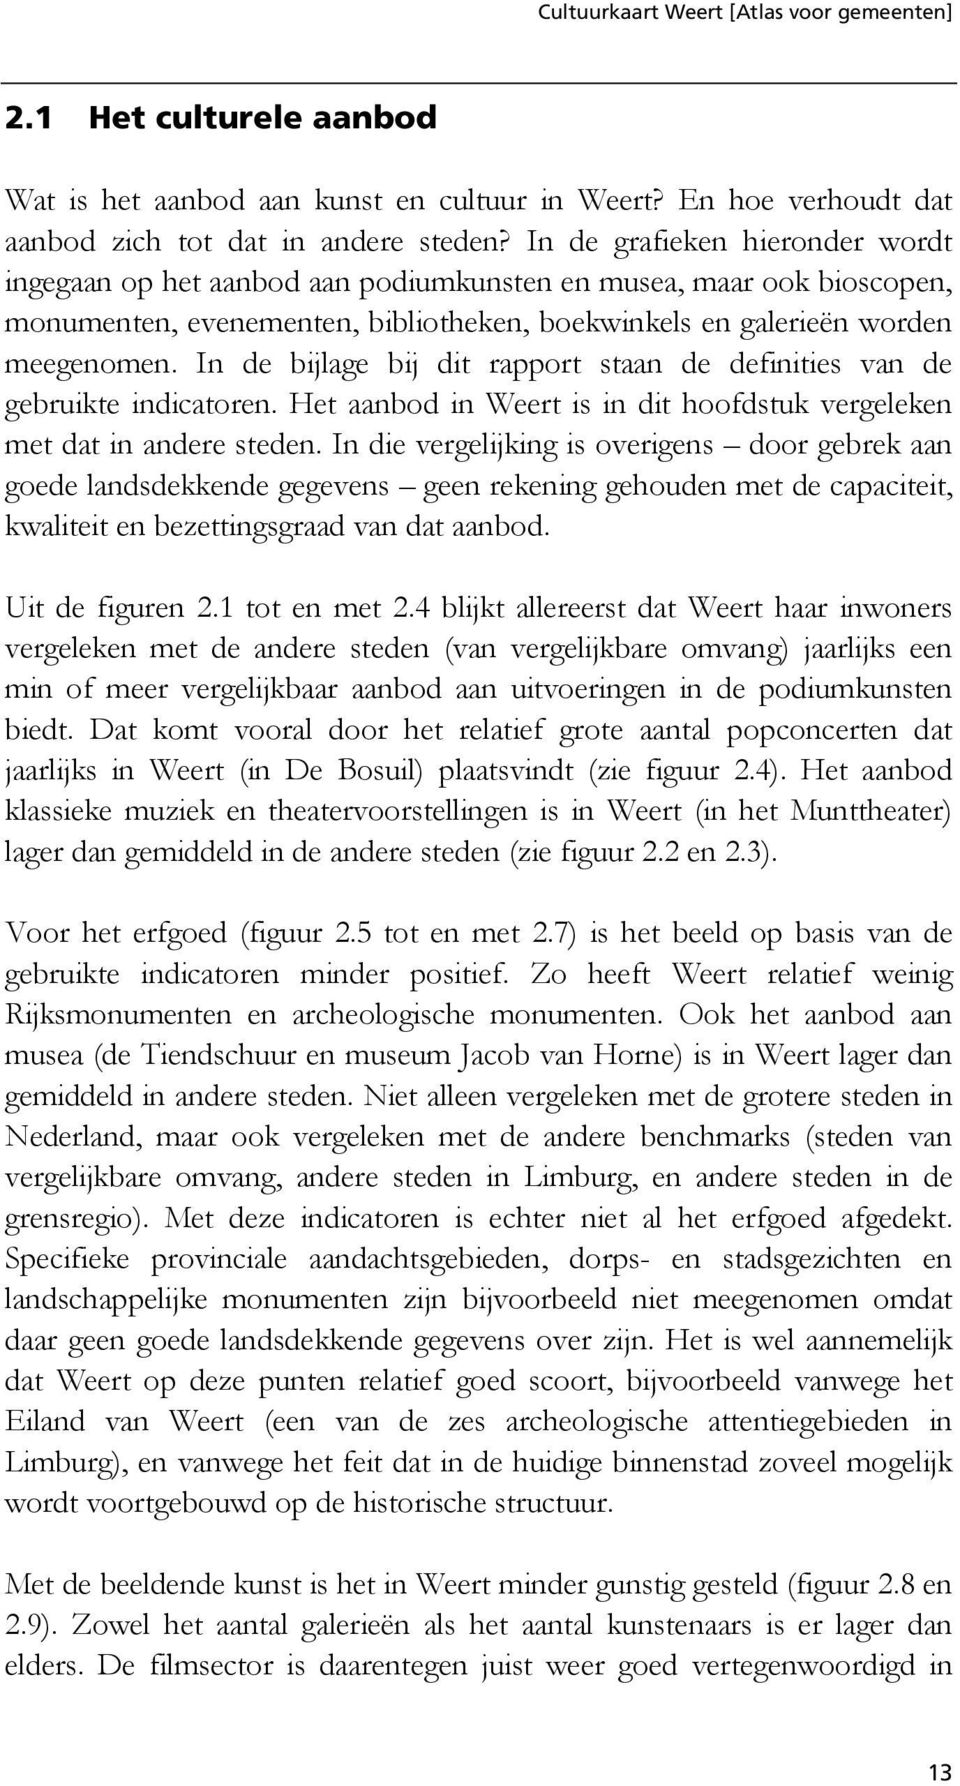 In de bijlage bij dit rapport staan de definities van de gebruikte indicatoren. Het aanbod in Weert is in dit hoofdstuk vergeleken met dat in andere steden.